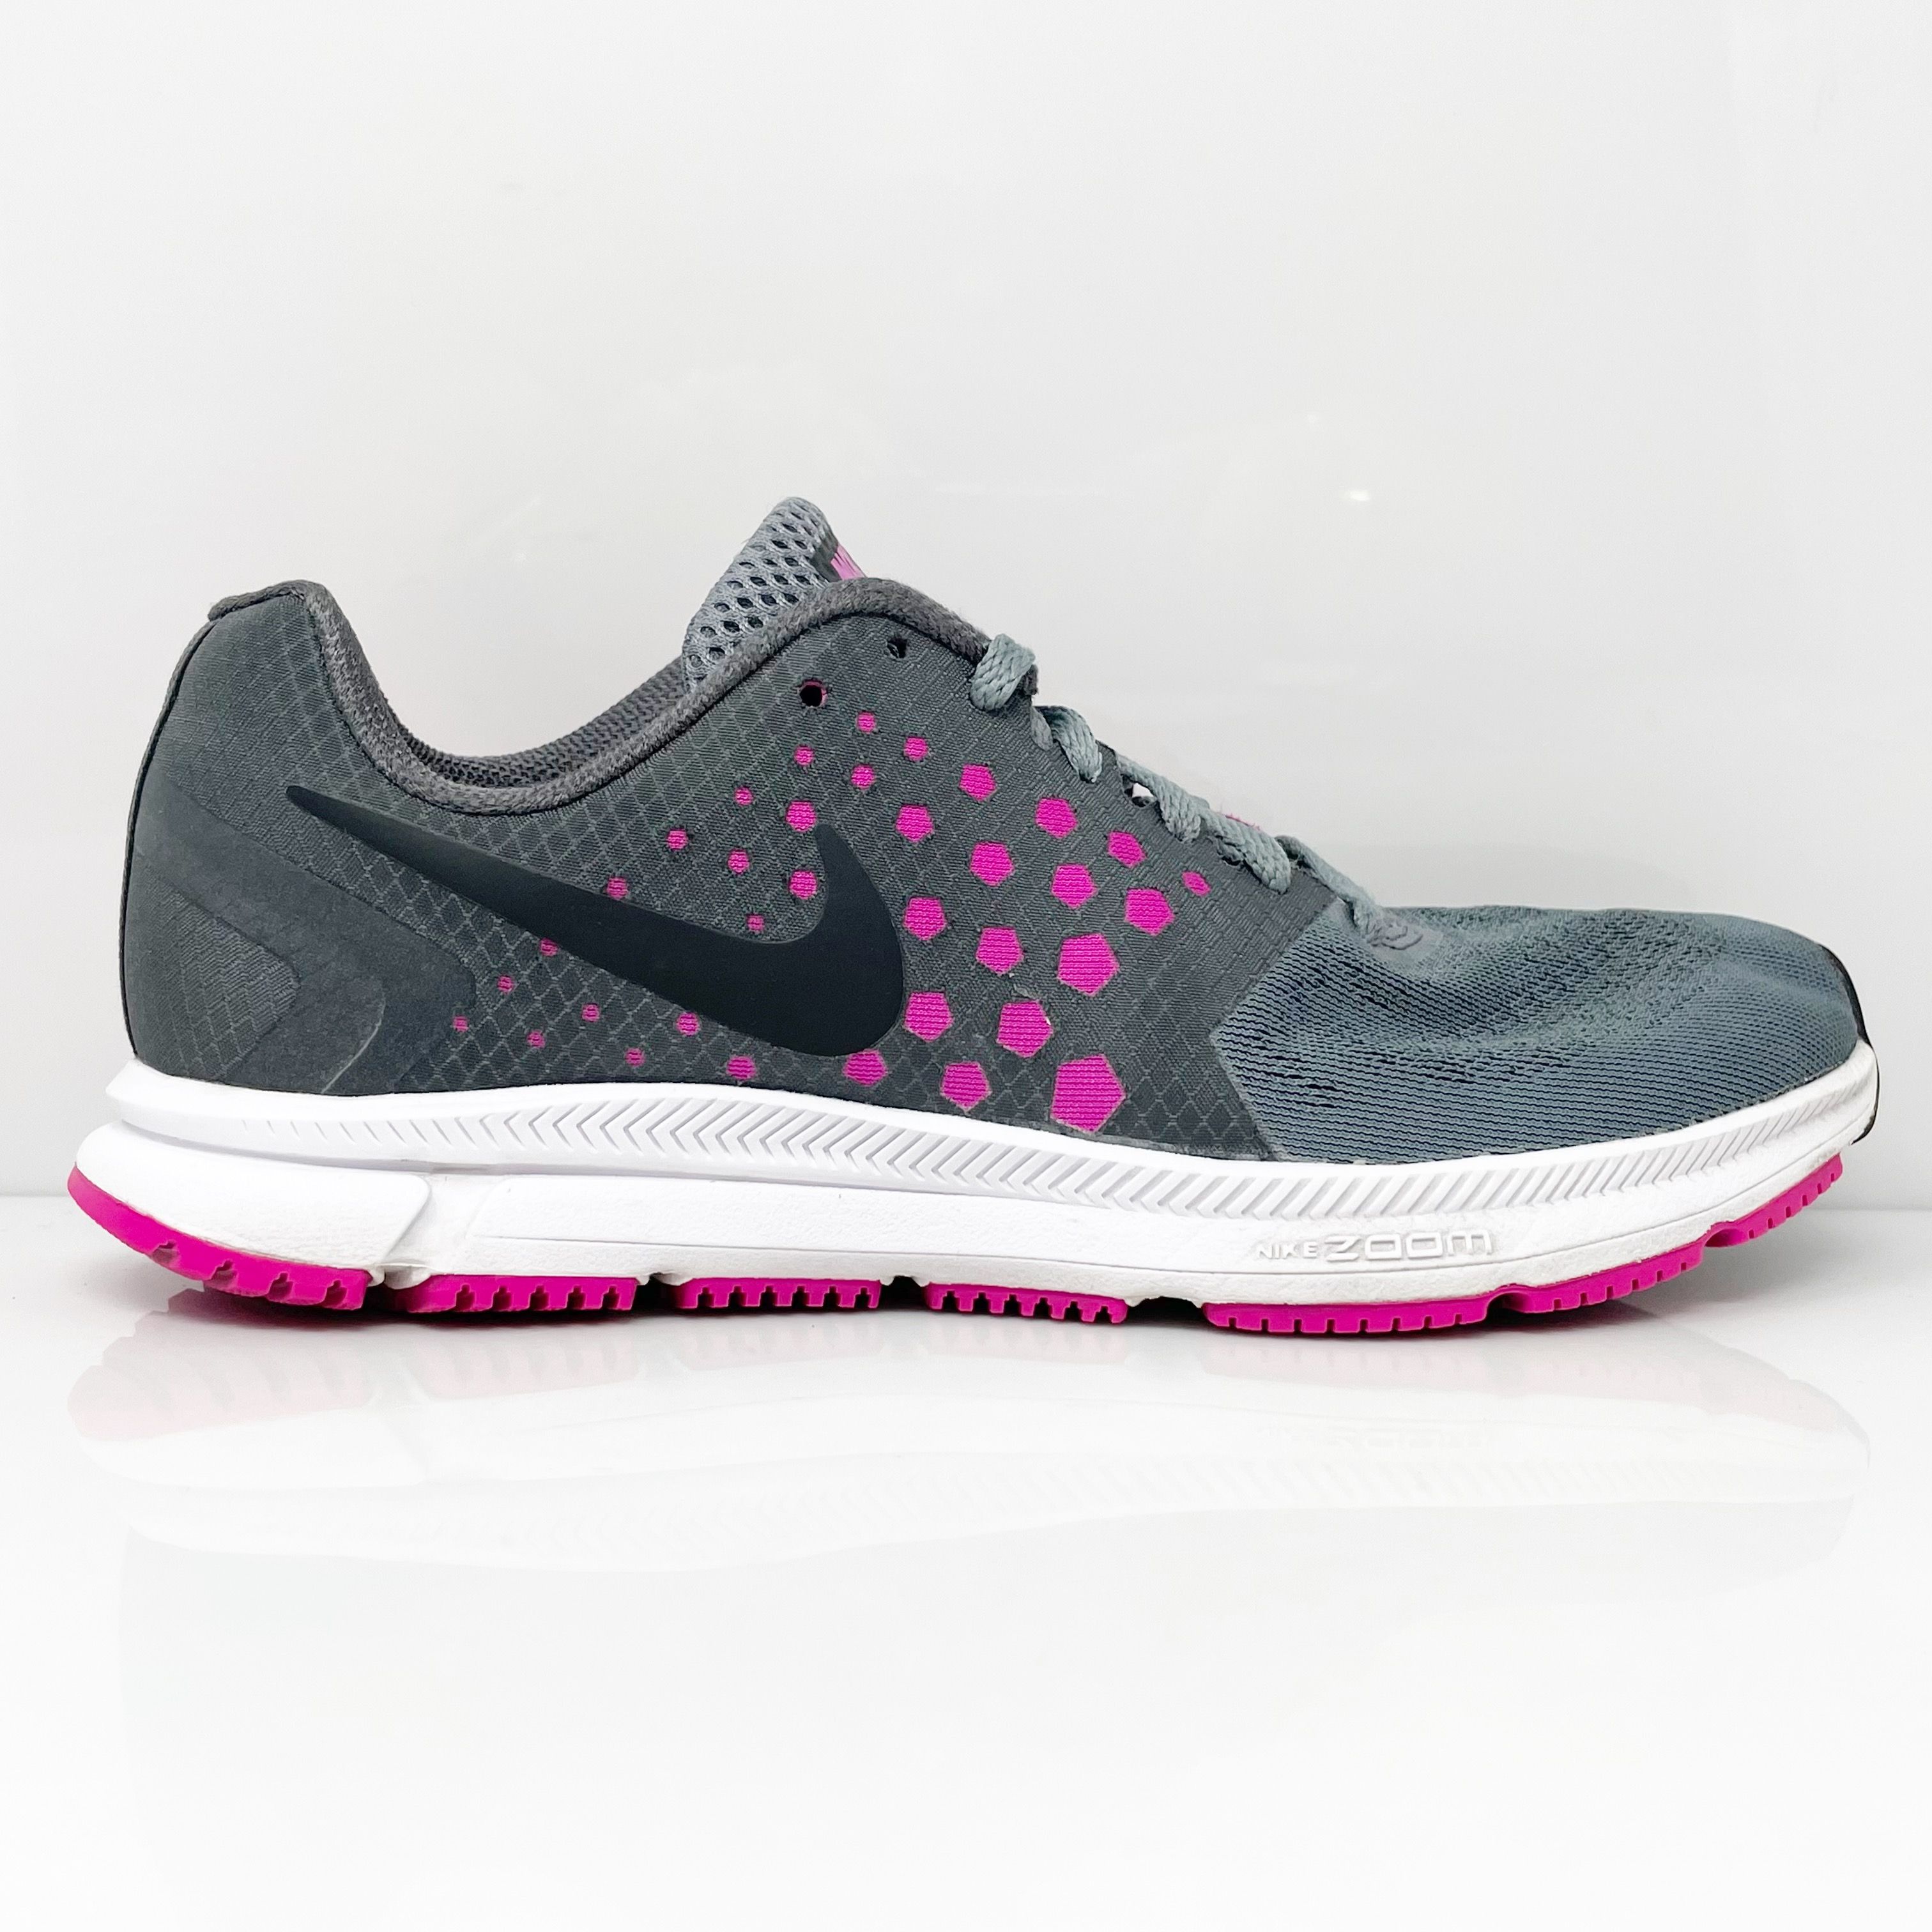 Кроссовки для бега Nike Womens Air Zoom Span 852450-002 серые, размер 8